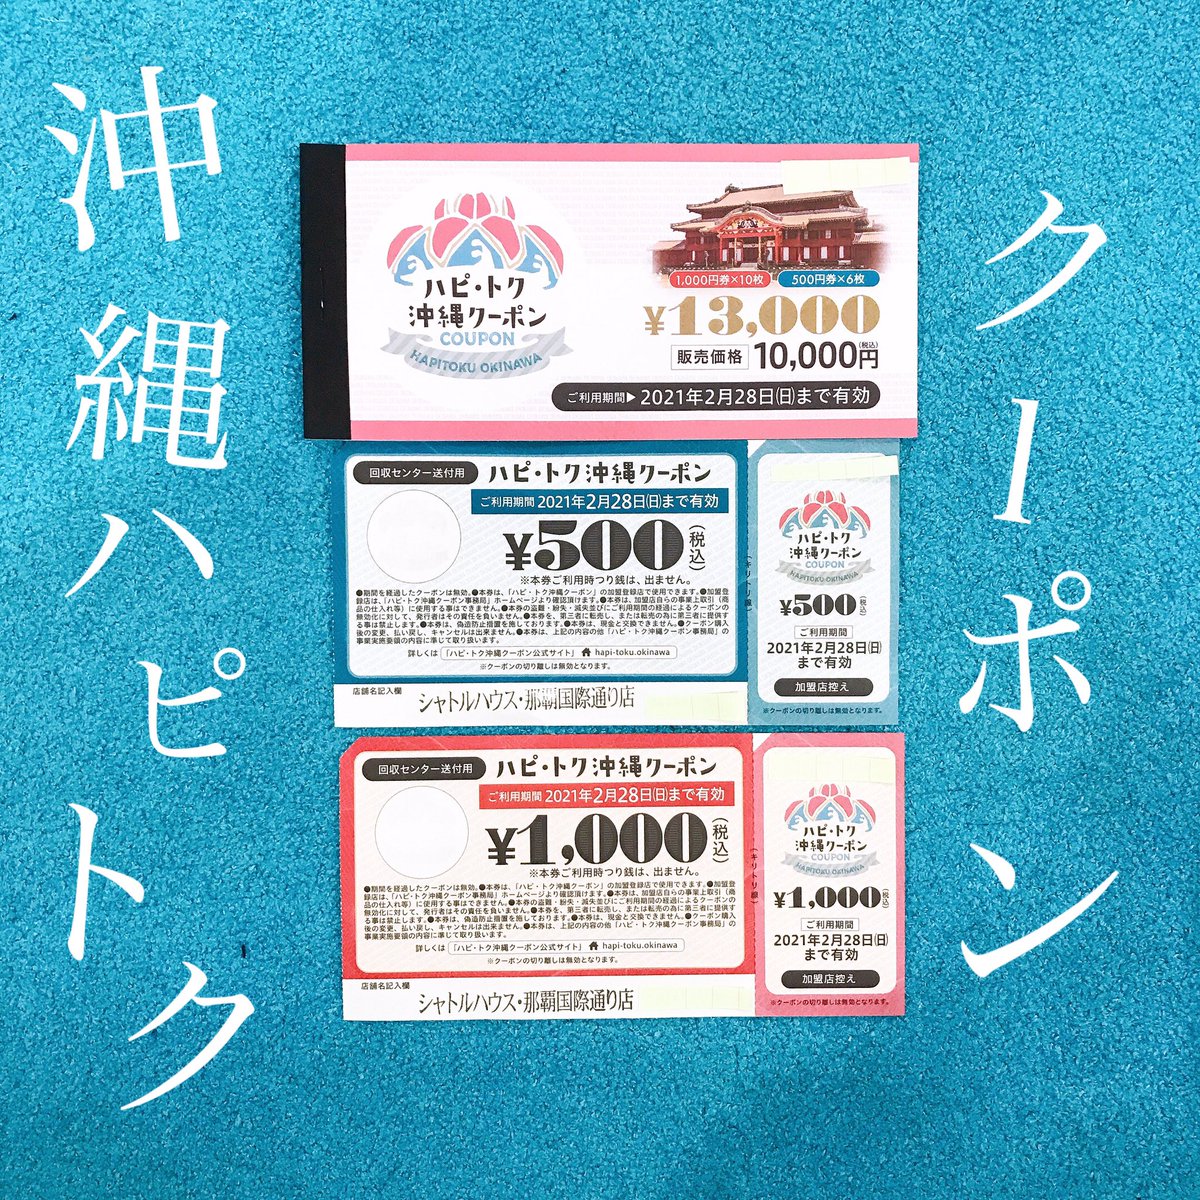 沖縄 クーポン ハピトク 地域で使えるクーポン 29日からファミマ各店で販売